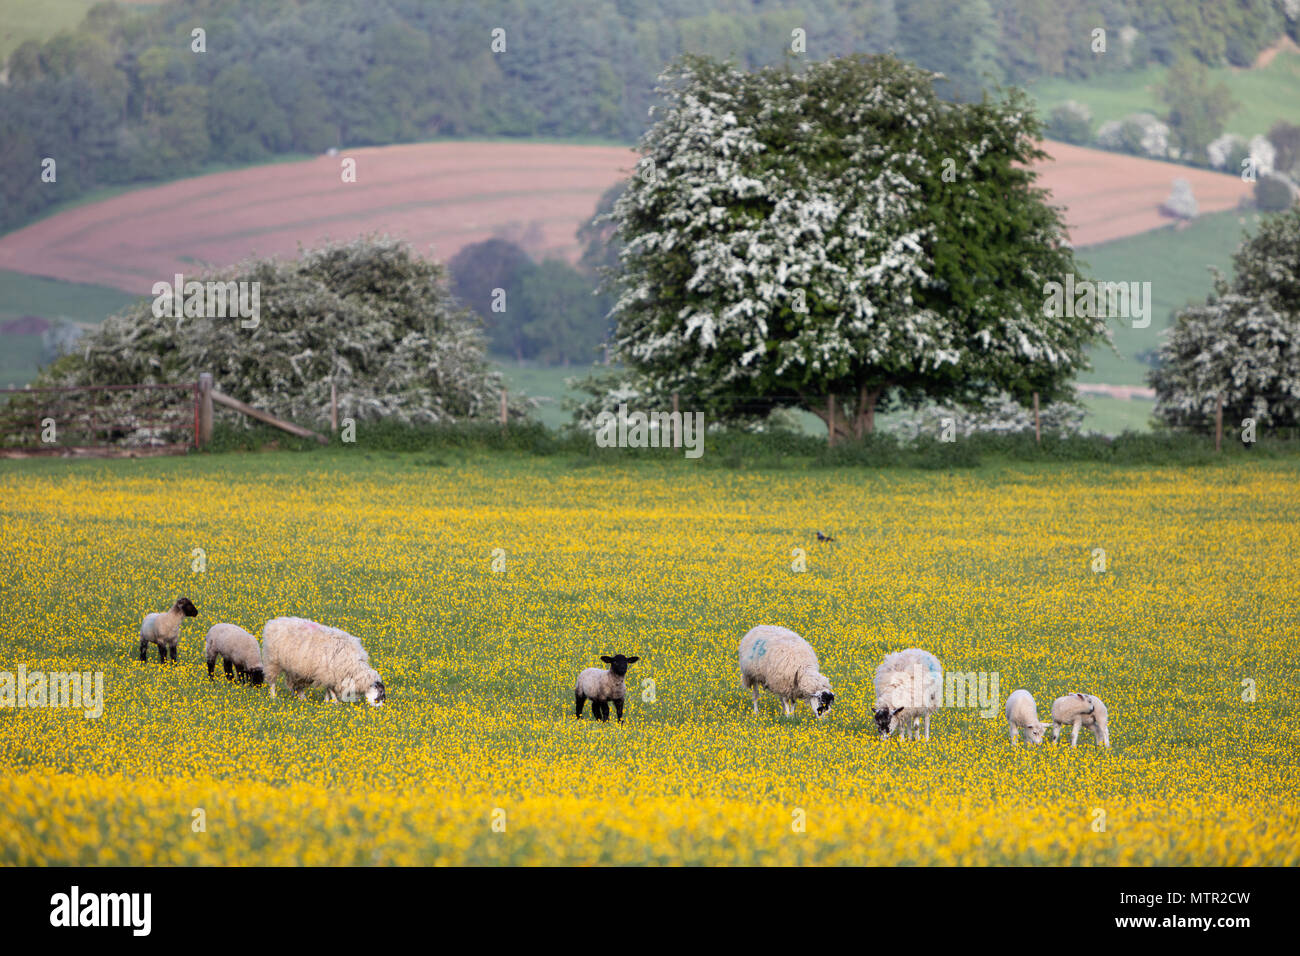 Agneaux et moutons paissant dans le champ Buttercup, Broadway, Cotswolds AONB, Worcestershire, Angleterre, Royaume-Uni, Europe Banque D'Images